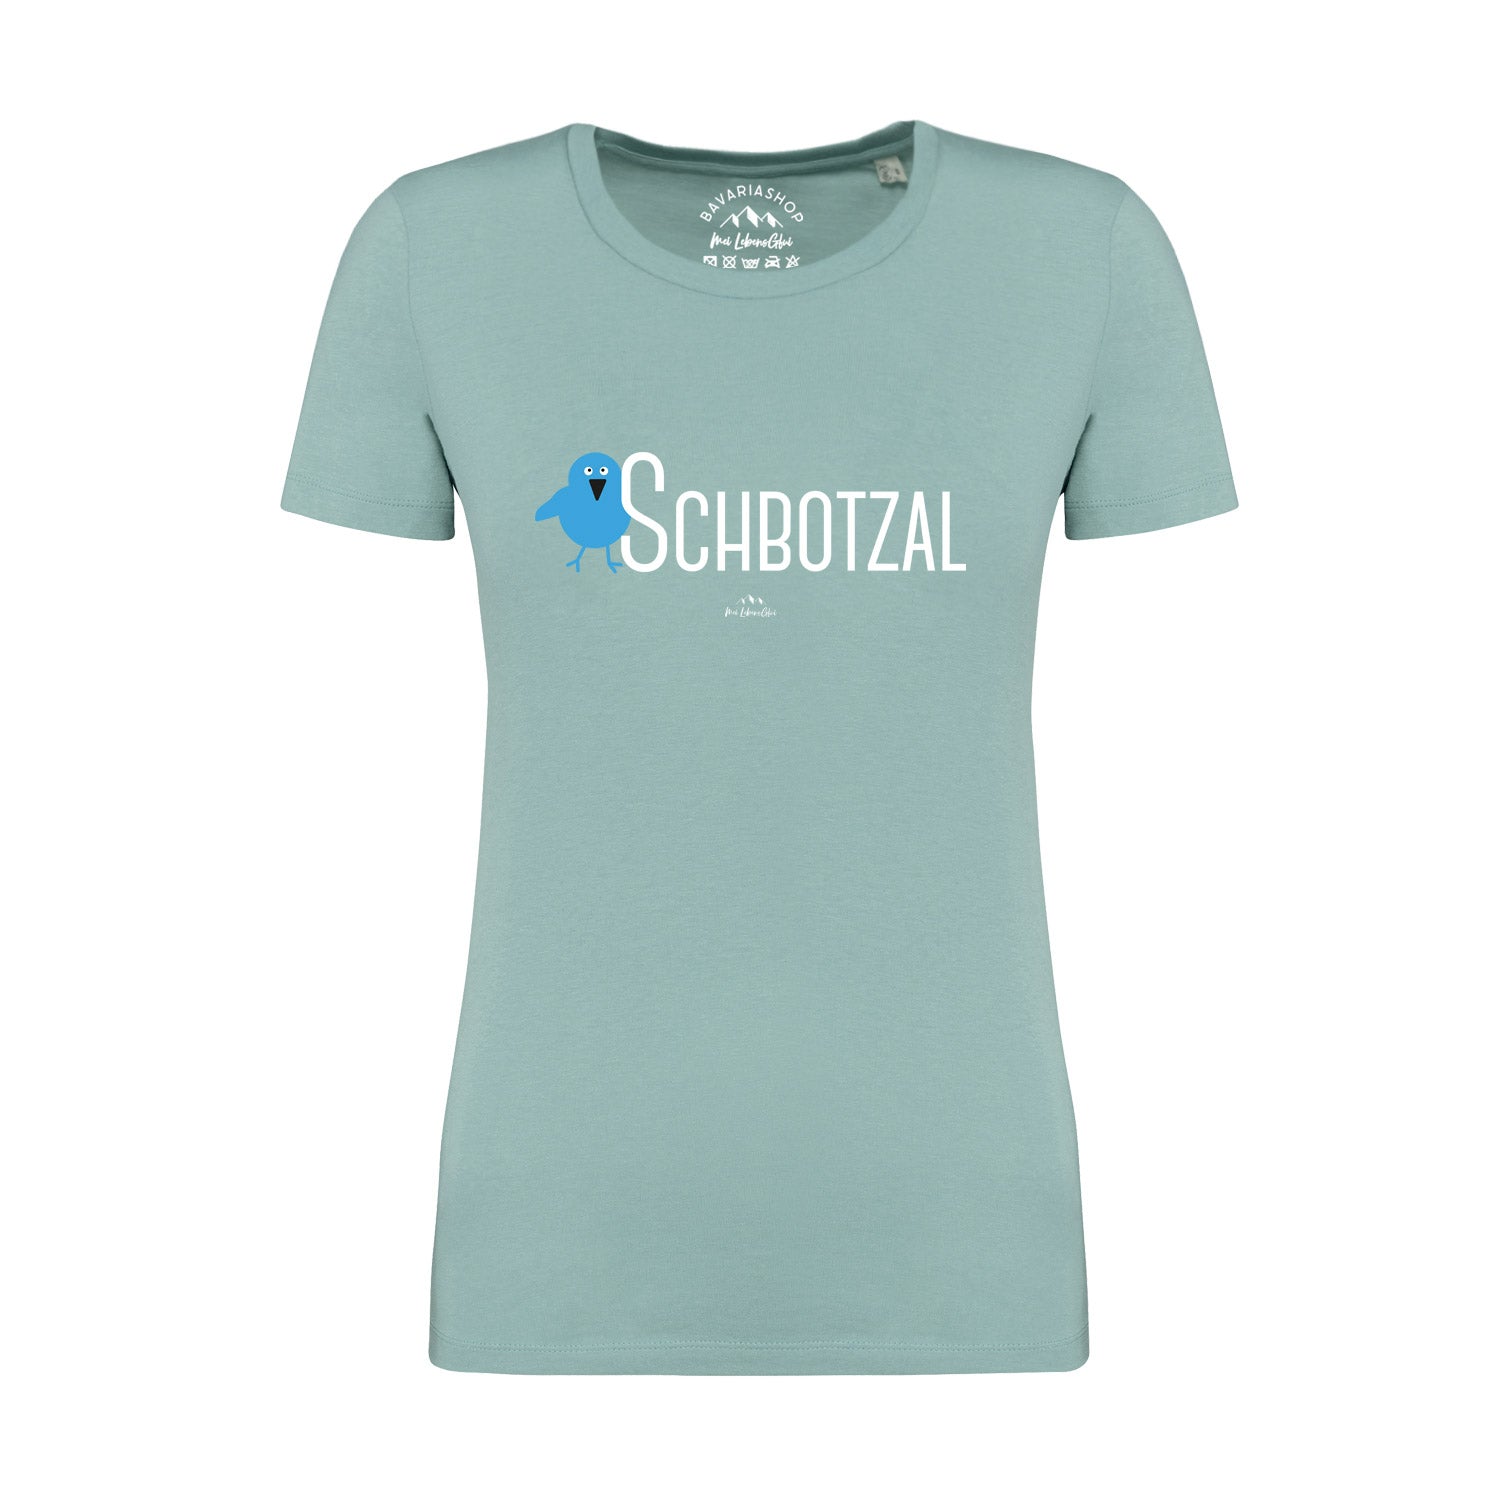 Damen T-Shirt "Schbotzal"